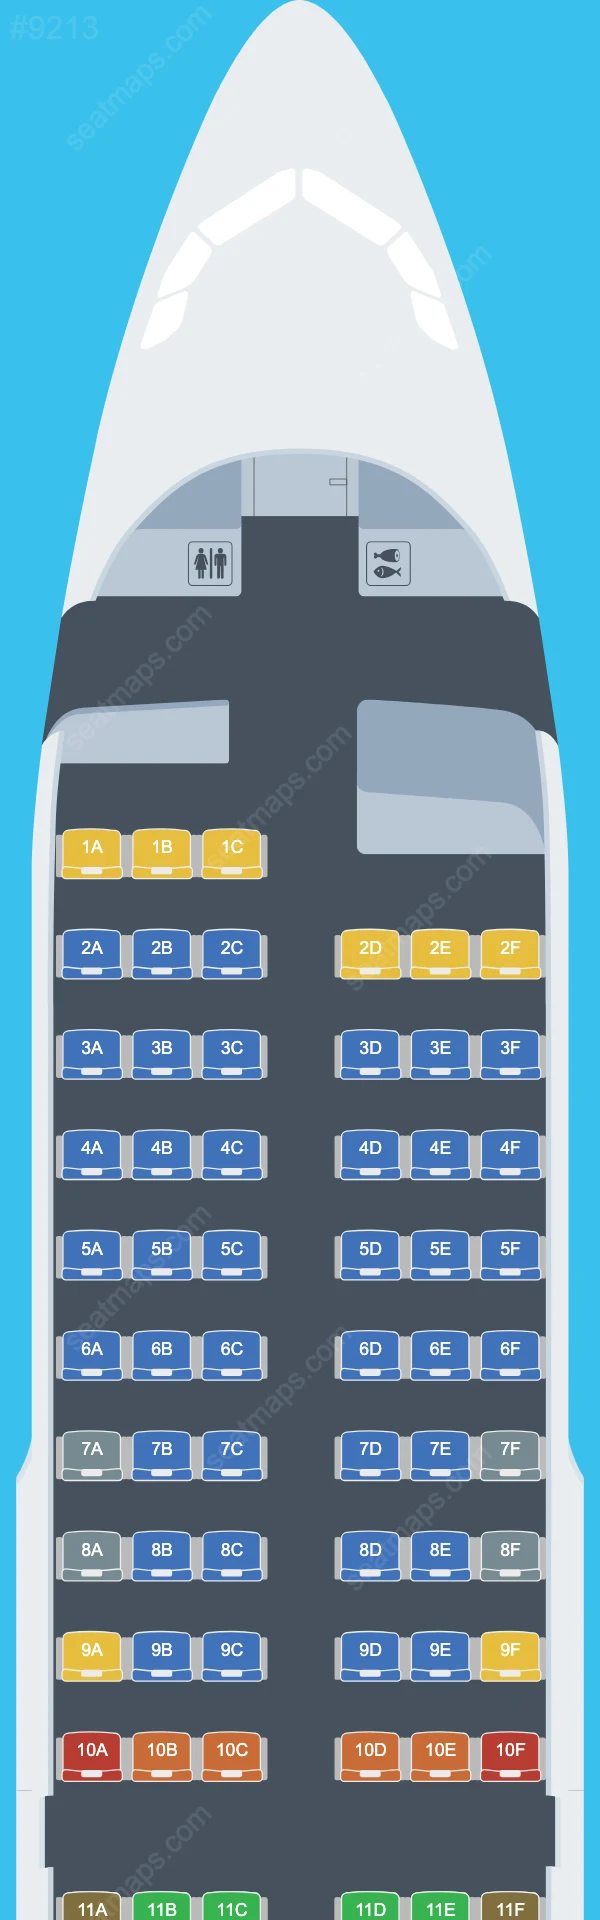 Meraj Air Airbus A319 Seat Maps A319-100